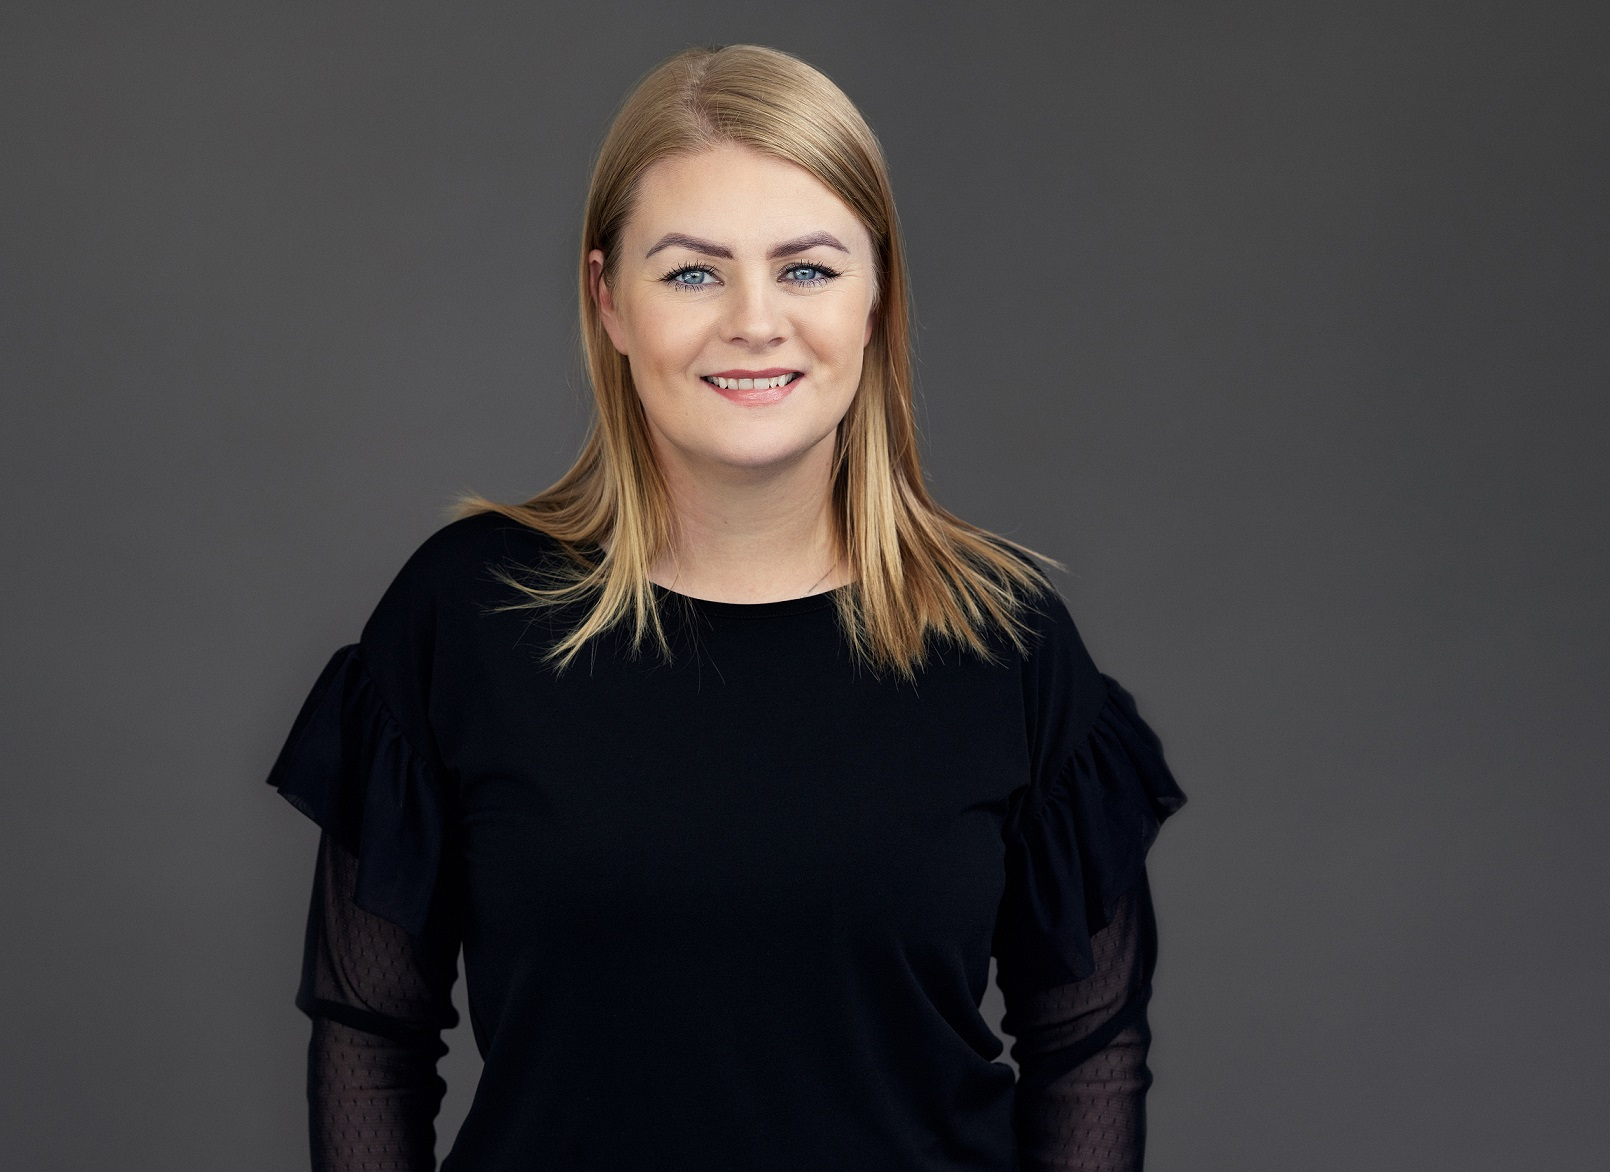 atNorth's ESG Manager, Ásdís Ólafsdóttir